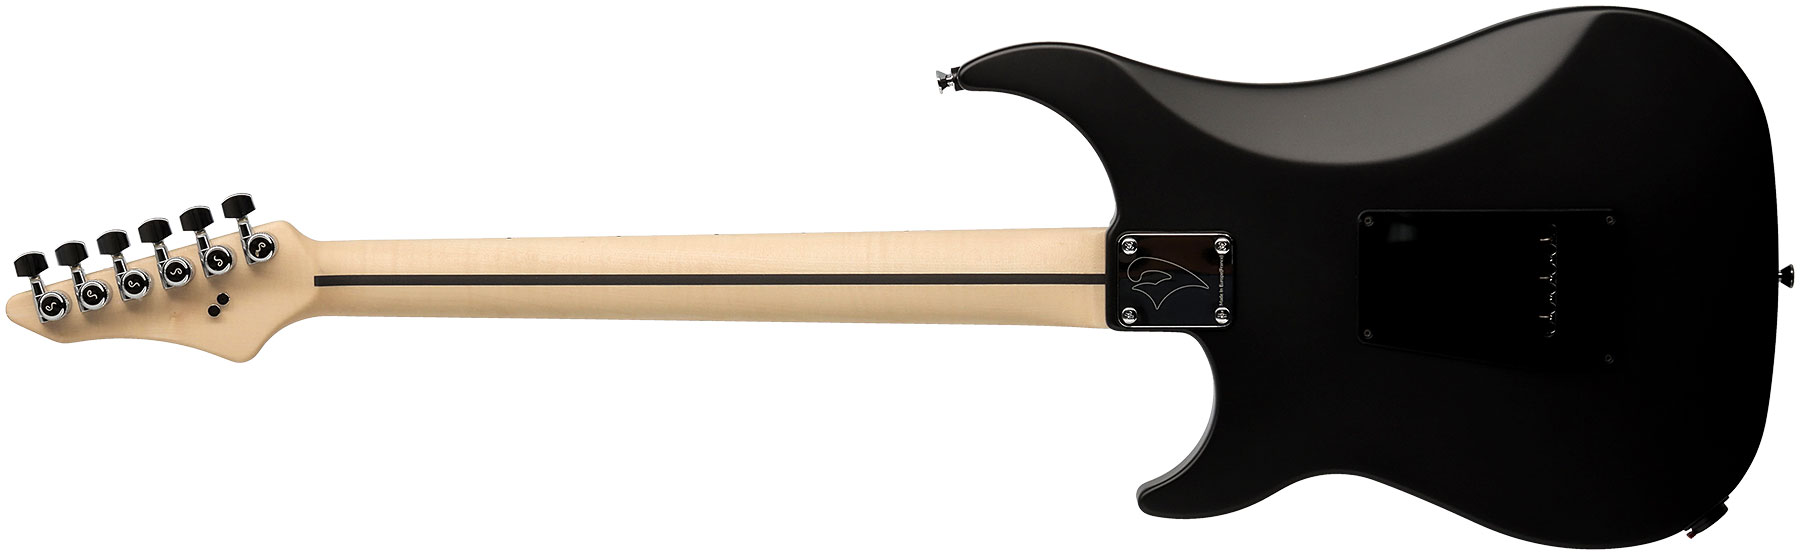 Vigier Excalibur Special Hsh Trem Rw - Black Diamond Matte - Str shape electric guitar - Variation 1